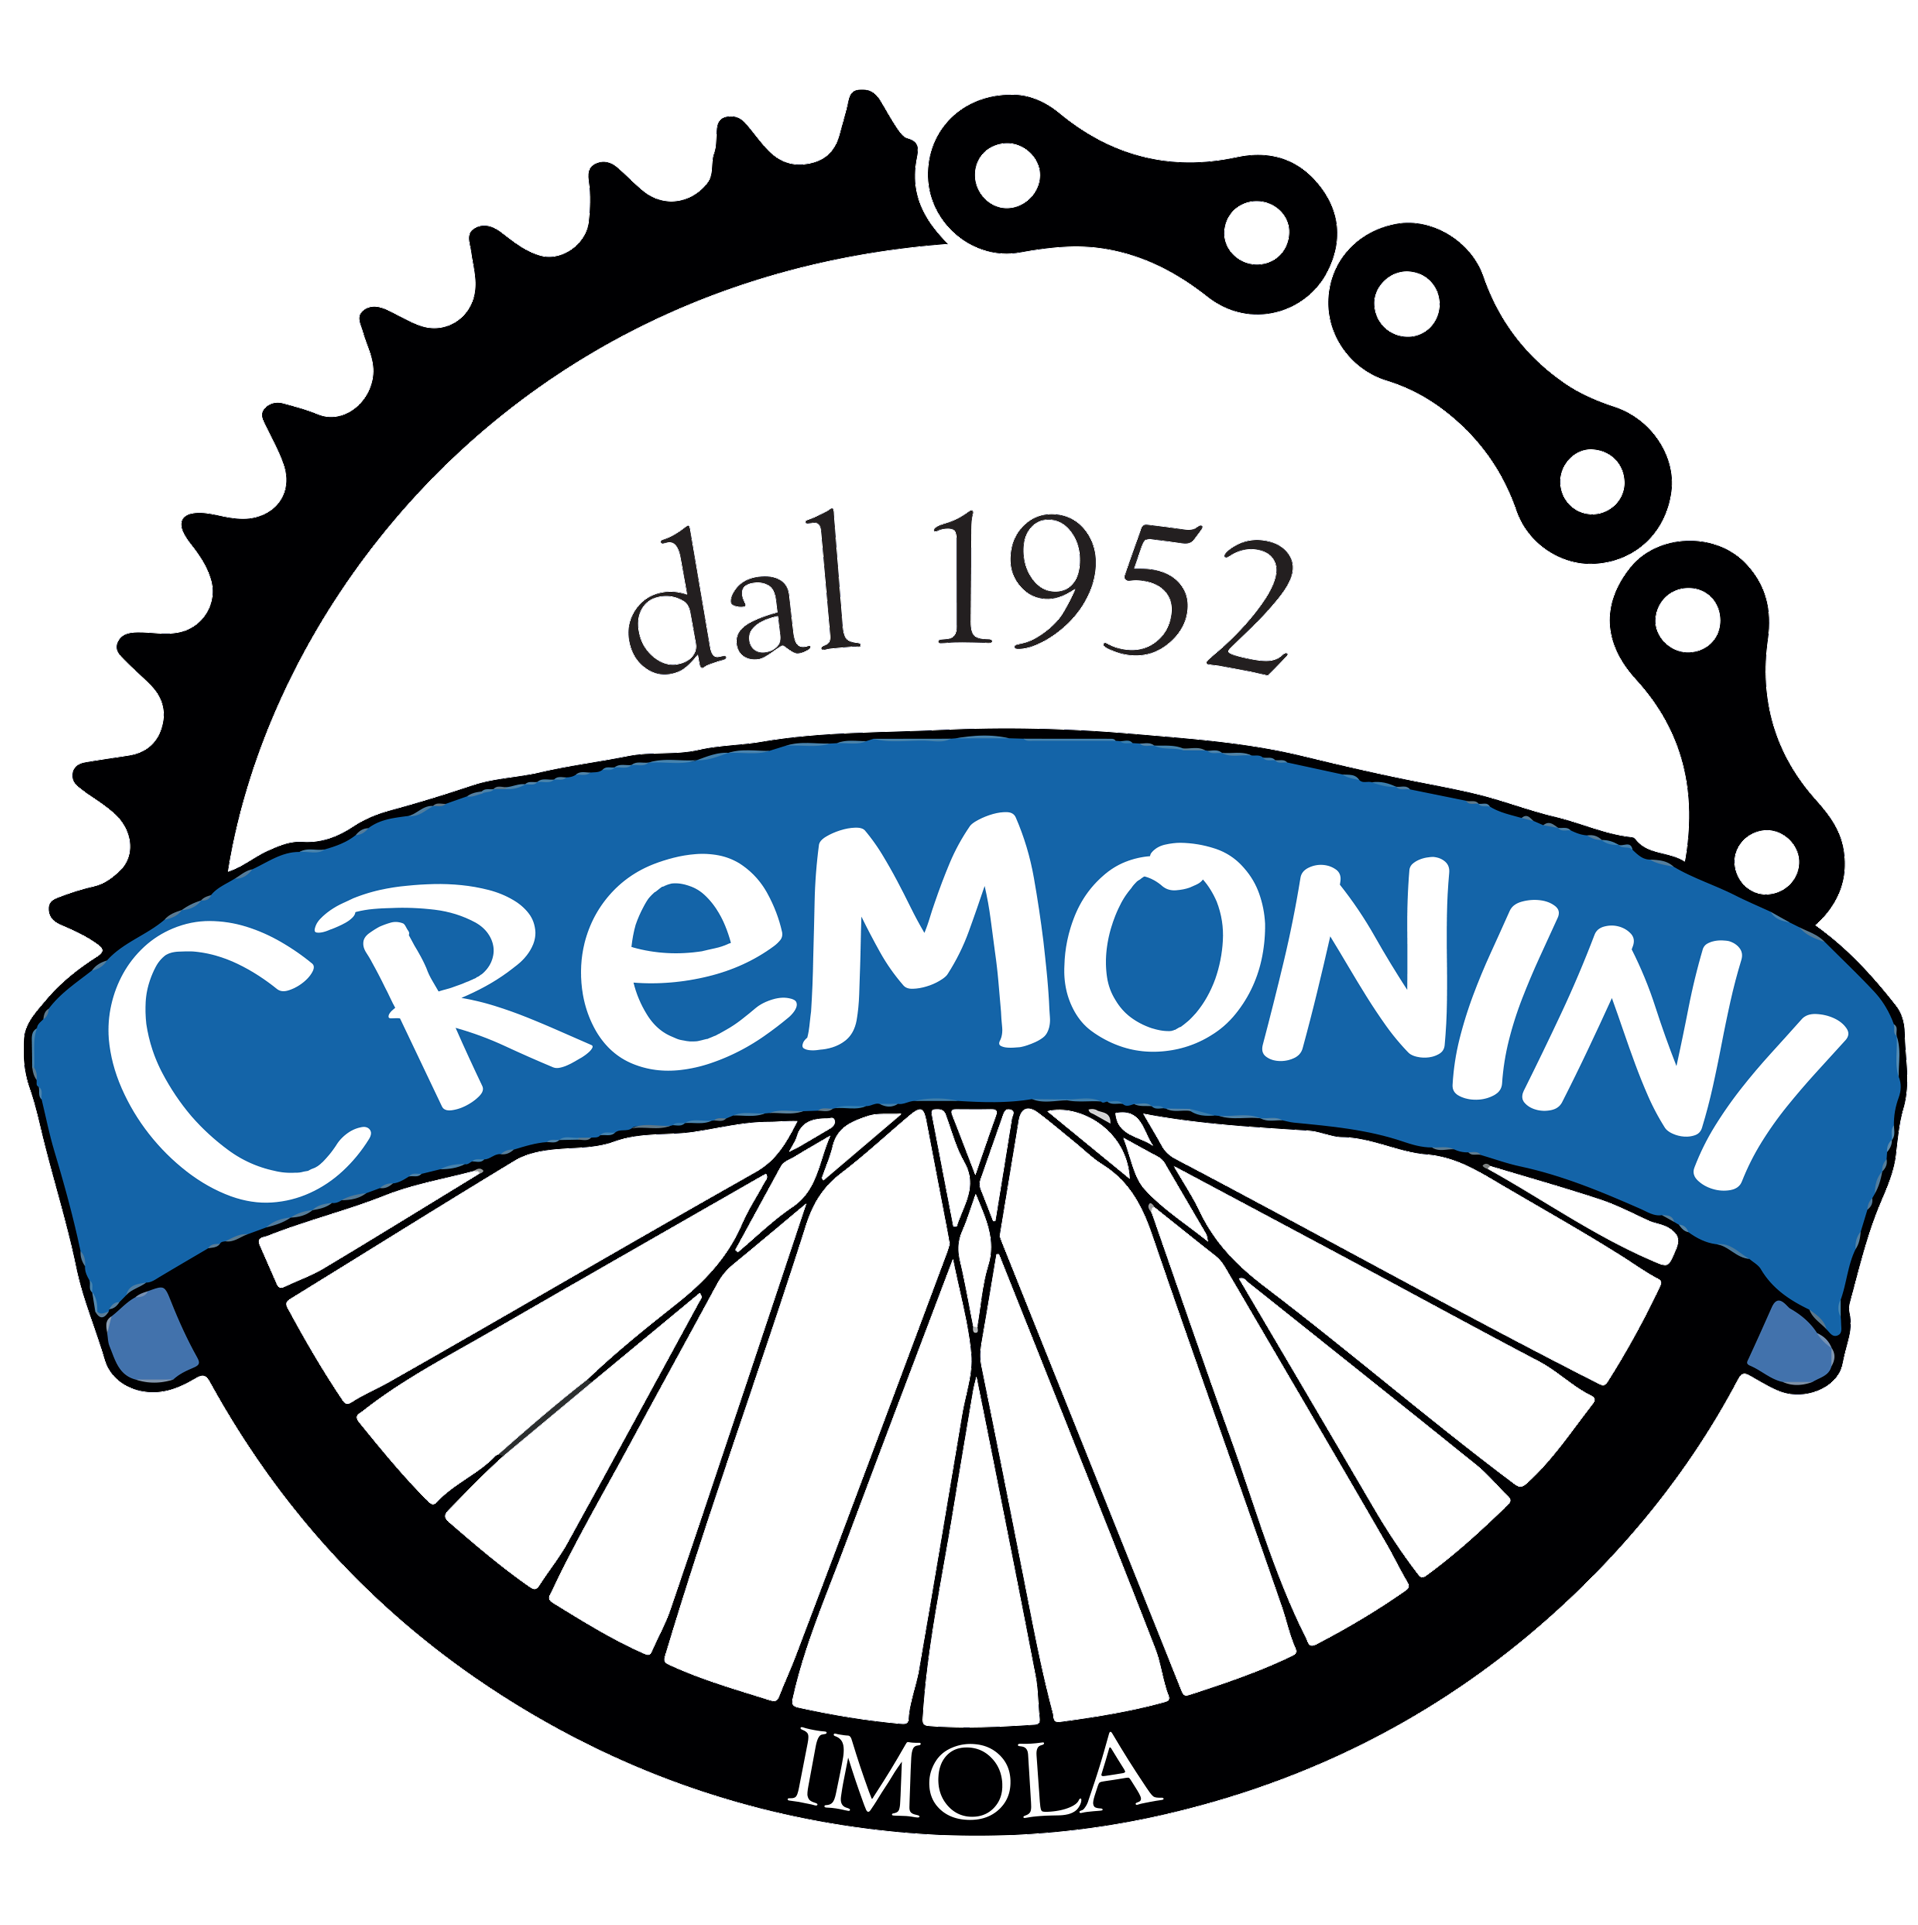 Cremonini-logo